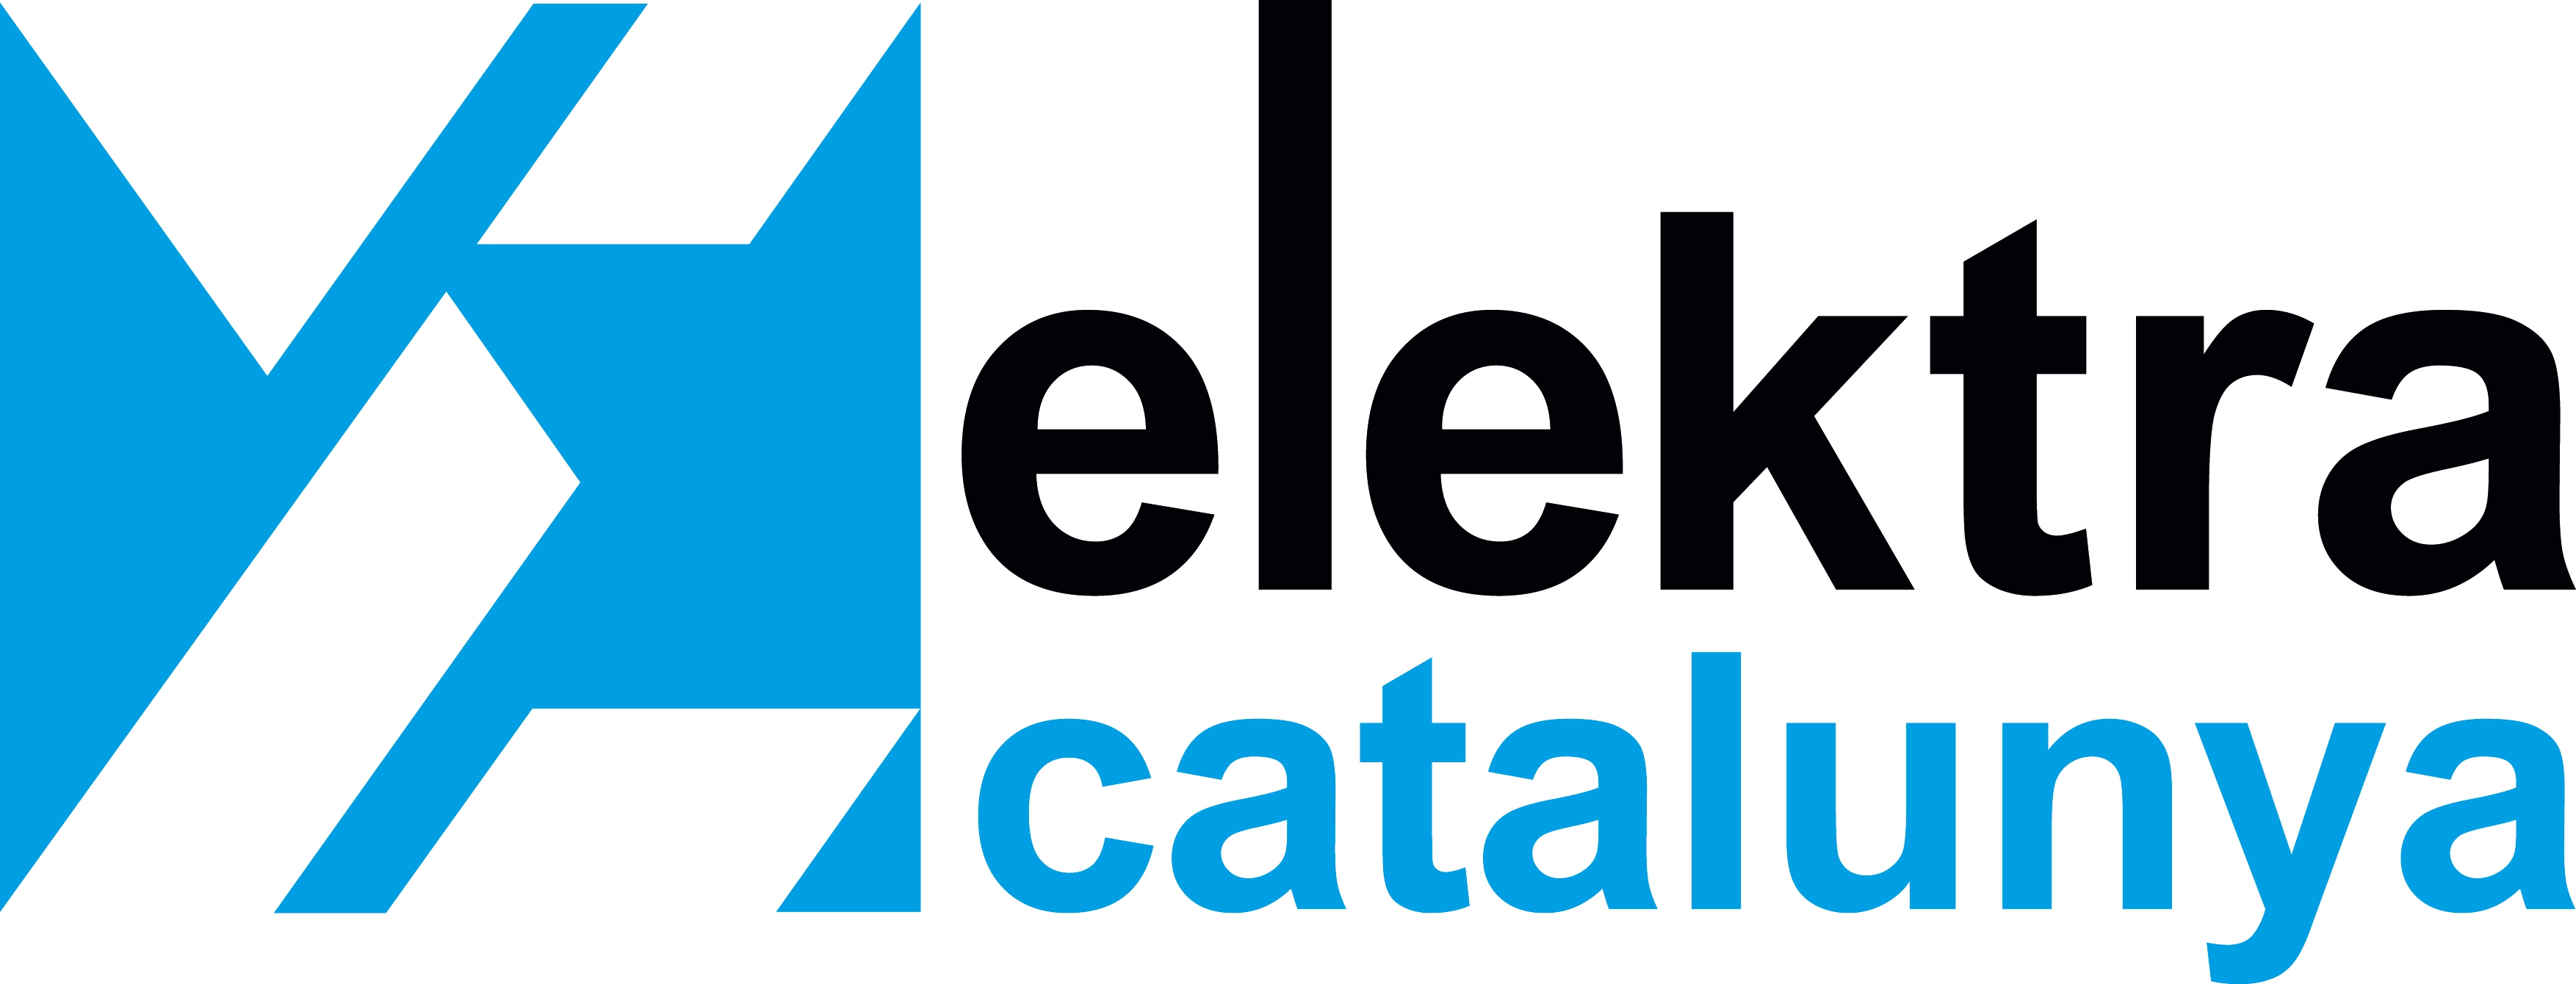 <!--:es-->Elektra Catalunya visitará el centro logístico de Schneider Electric<!--:-->